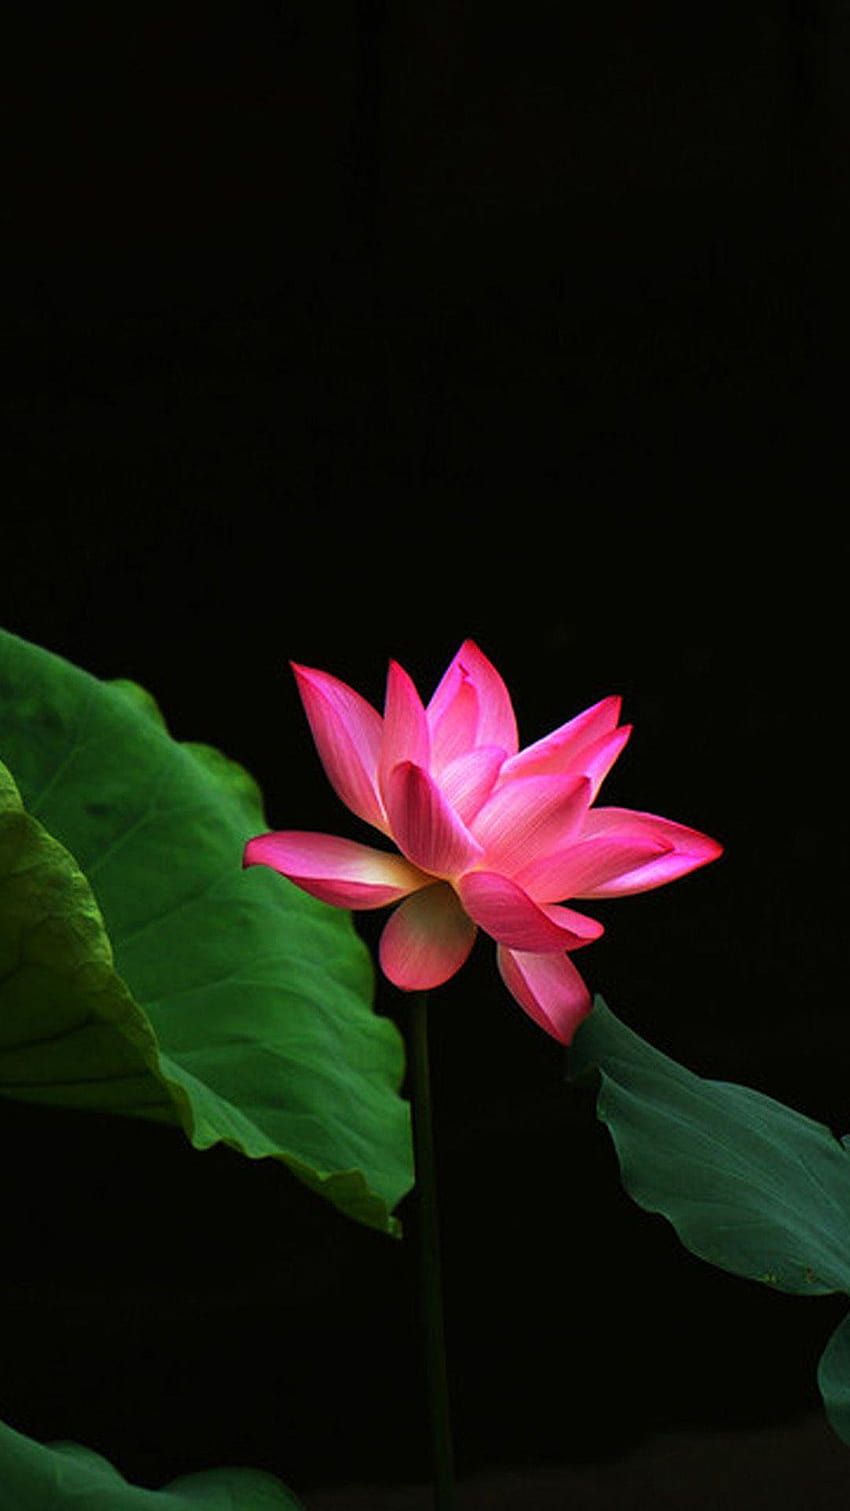 Lotus Flower Galaxy Note 3, red lotus flower HD phone wallpaper